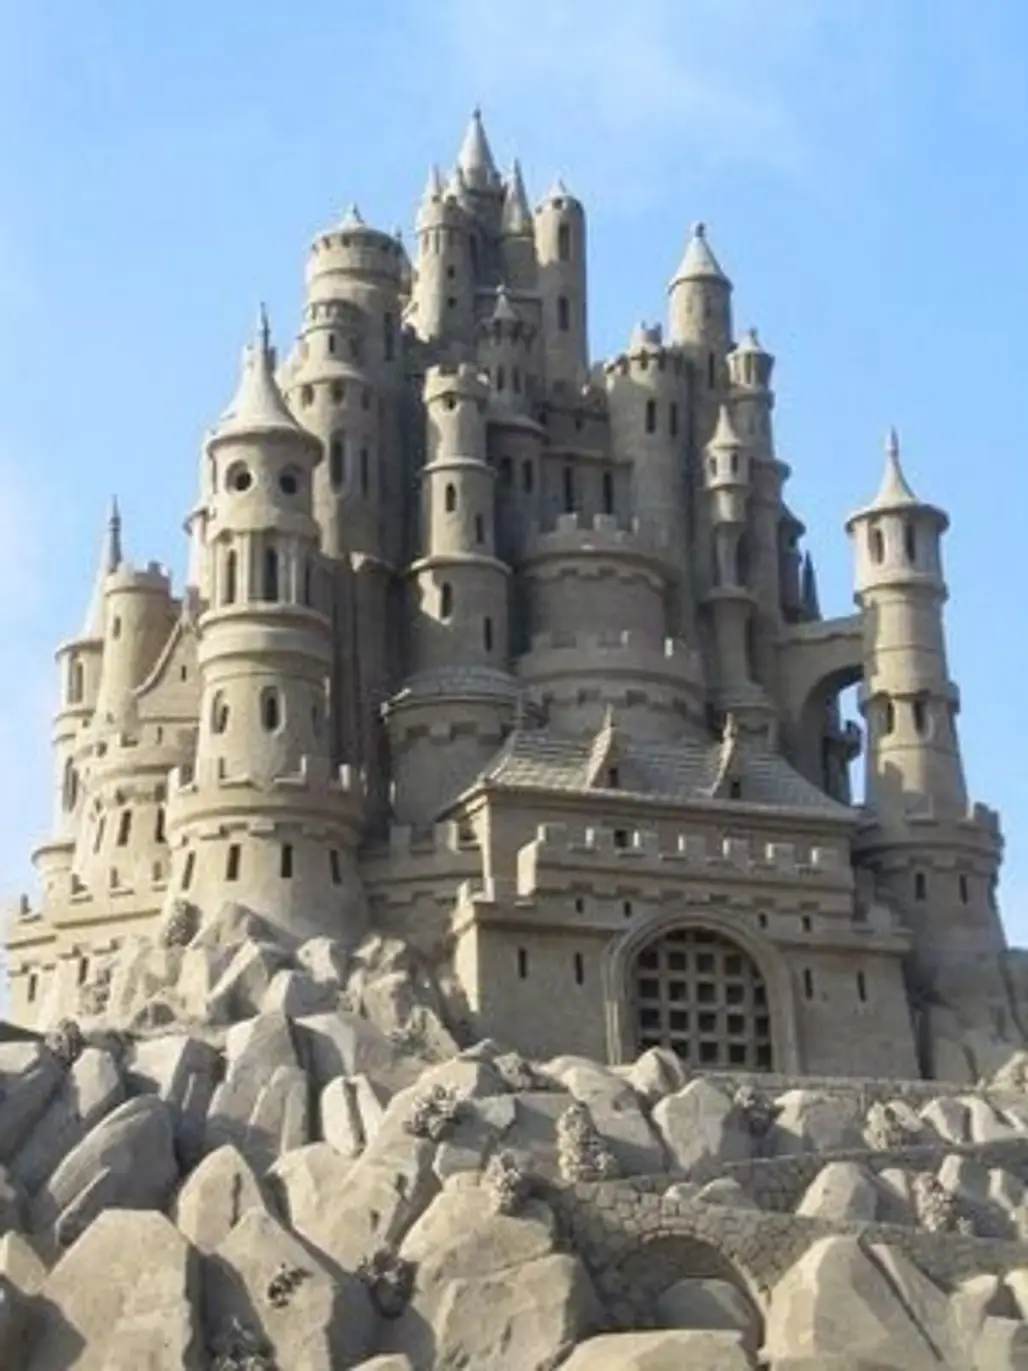 The Most Epic Castle